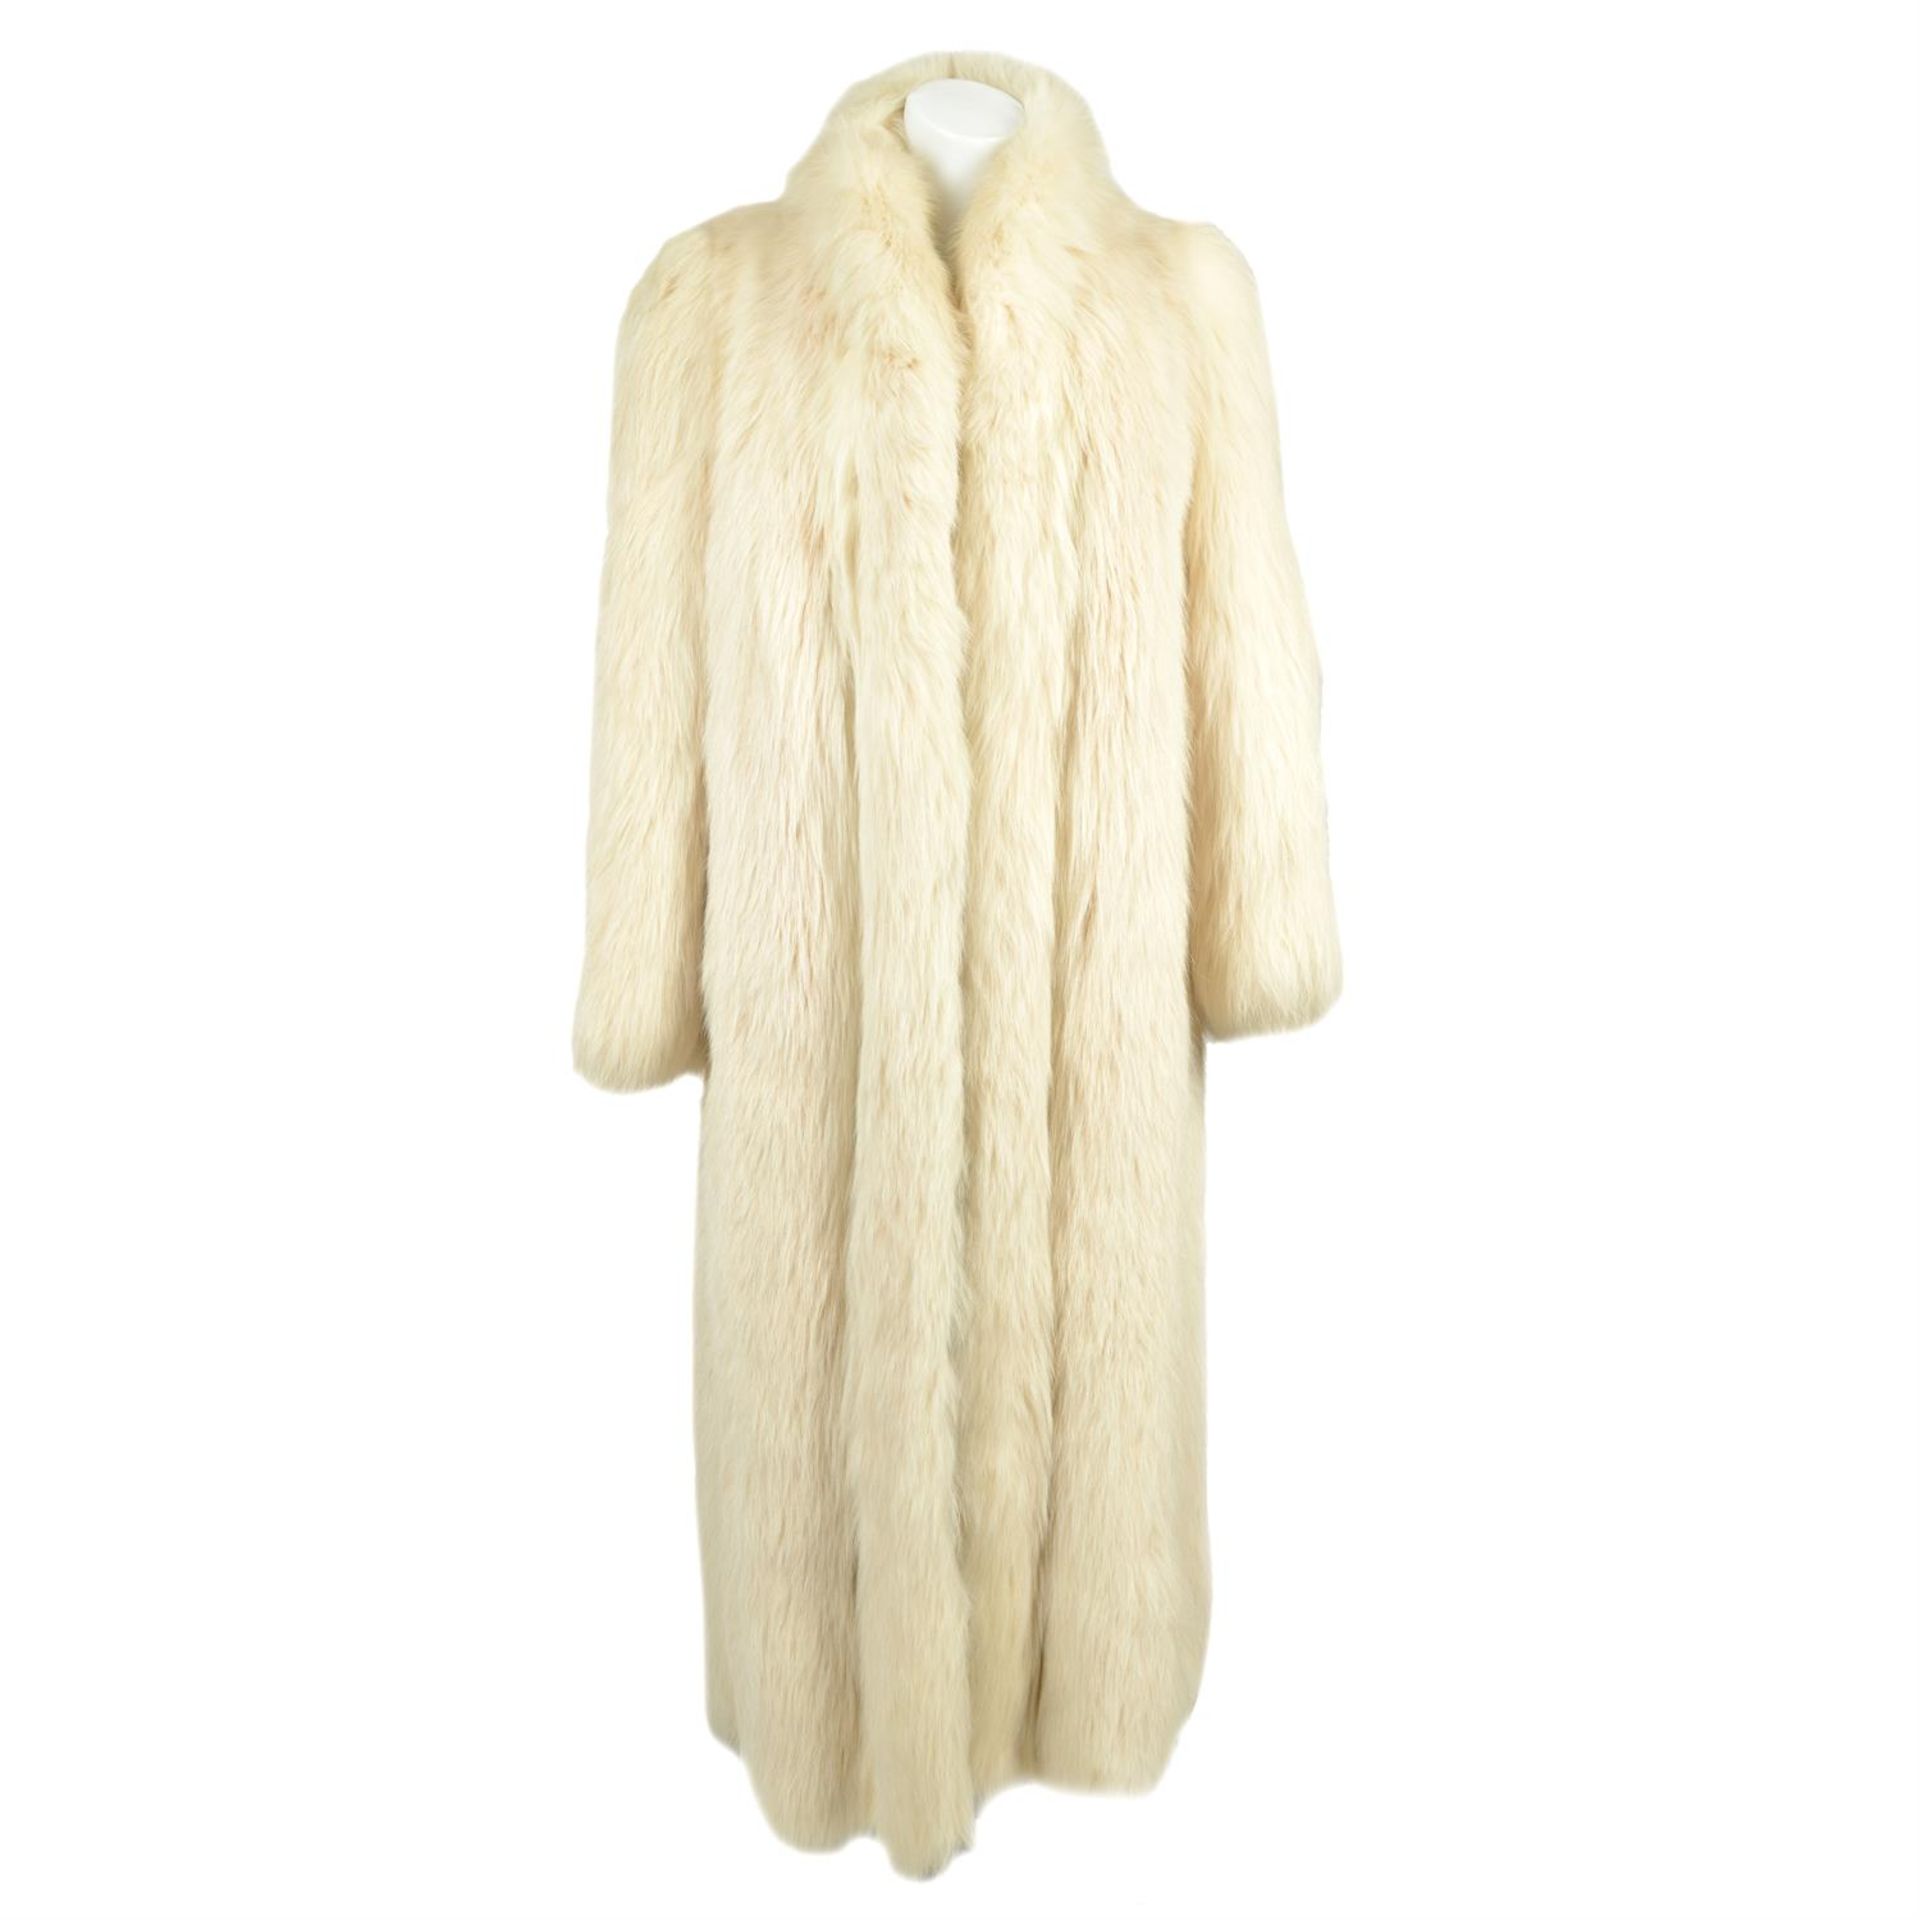 A Phillip Hockley Fur coat.